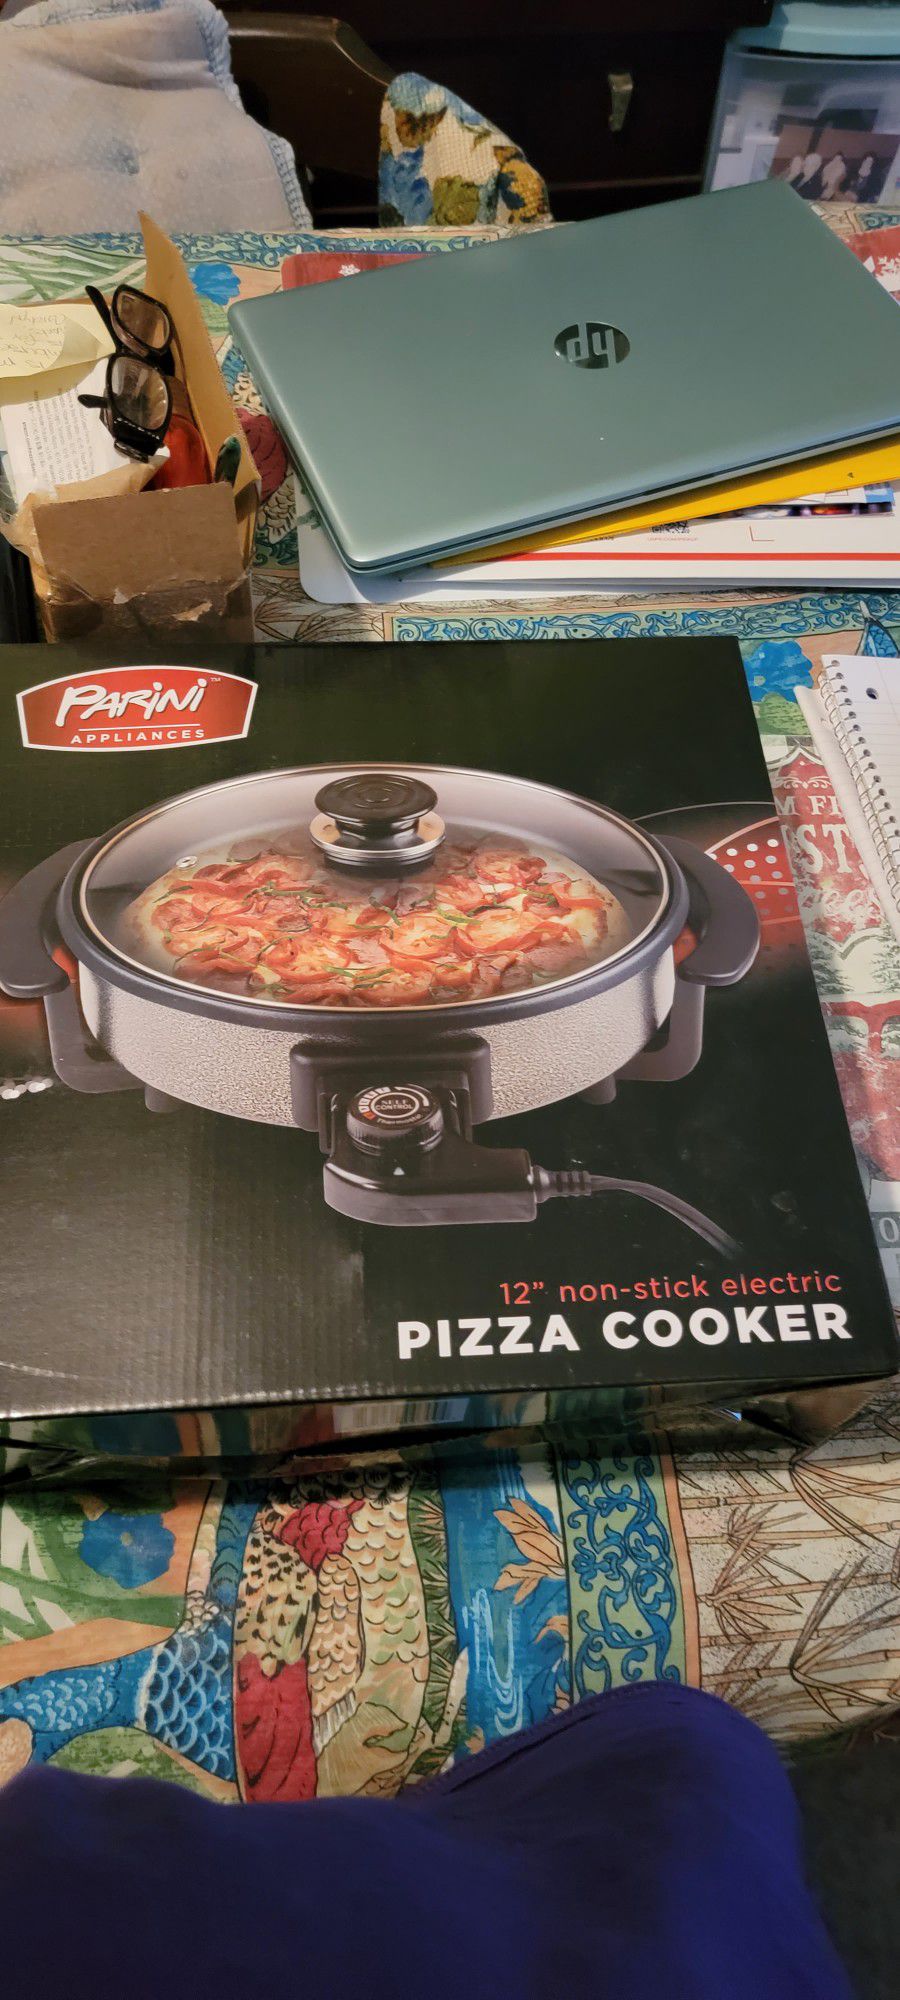 Parini Appliances 12" Non-stick Electric Pizza Cooker